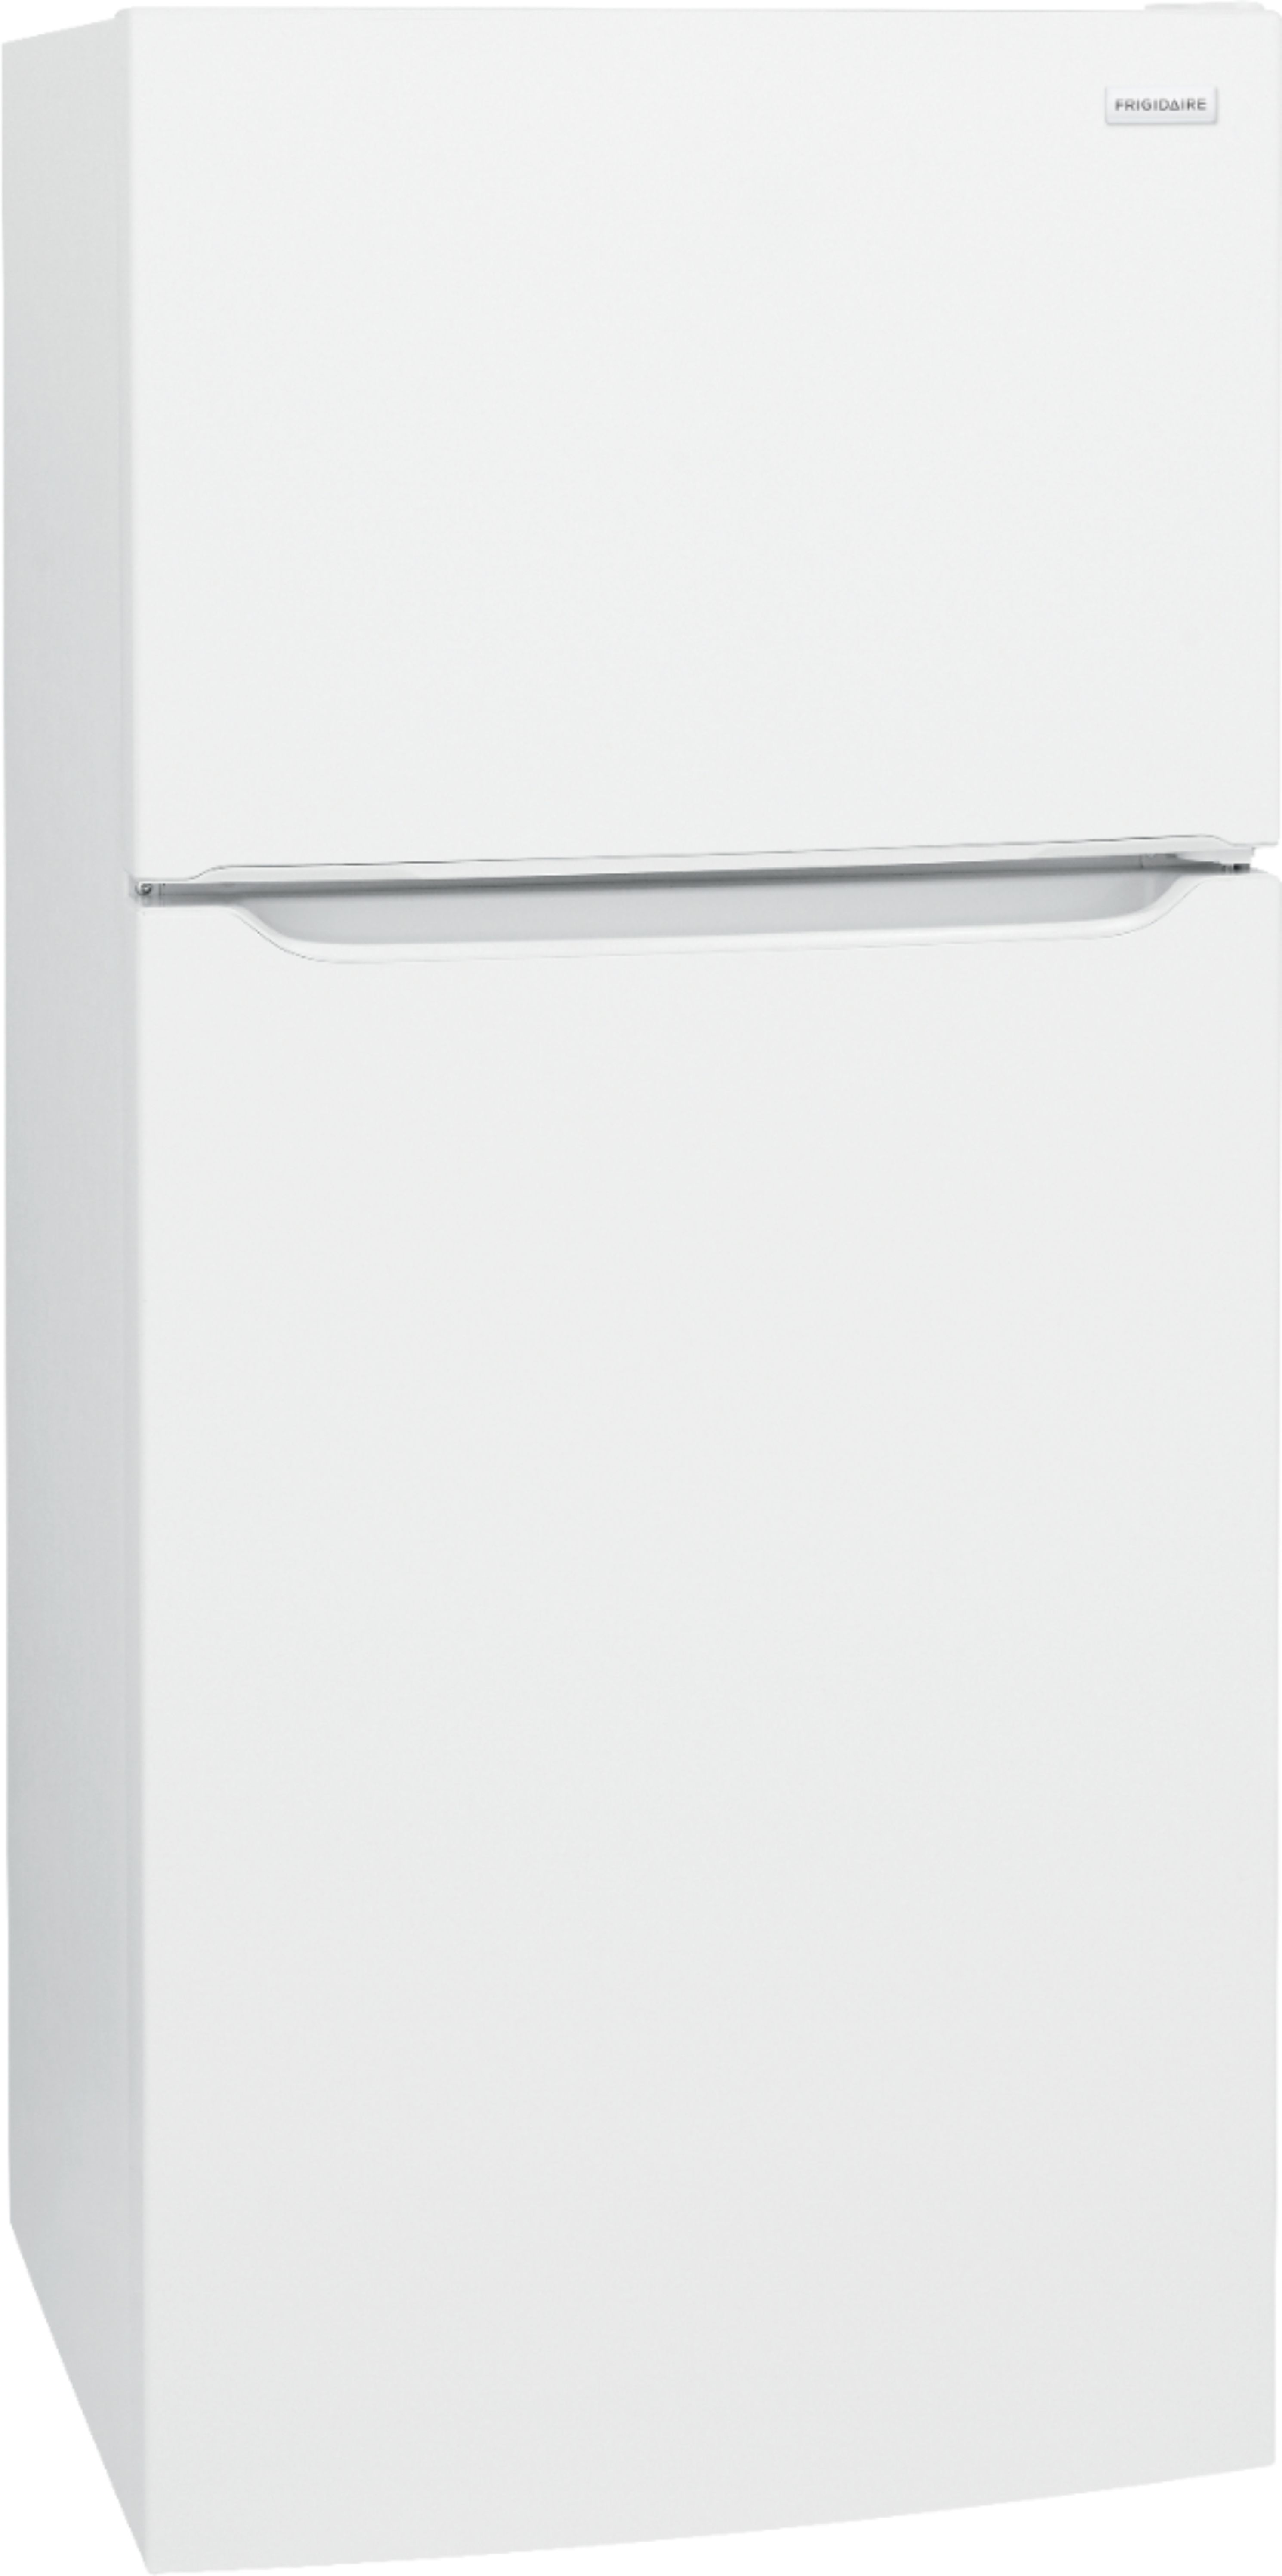 Angle View: Frigidaire - 18.3 Cu. Ft. Top-Freezer Refrigerator - Black